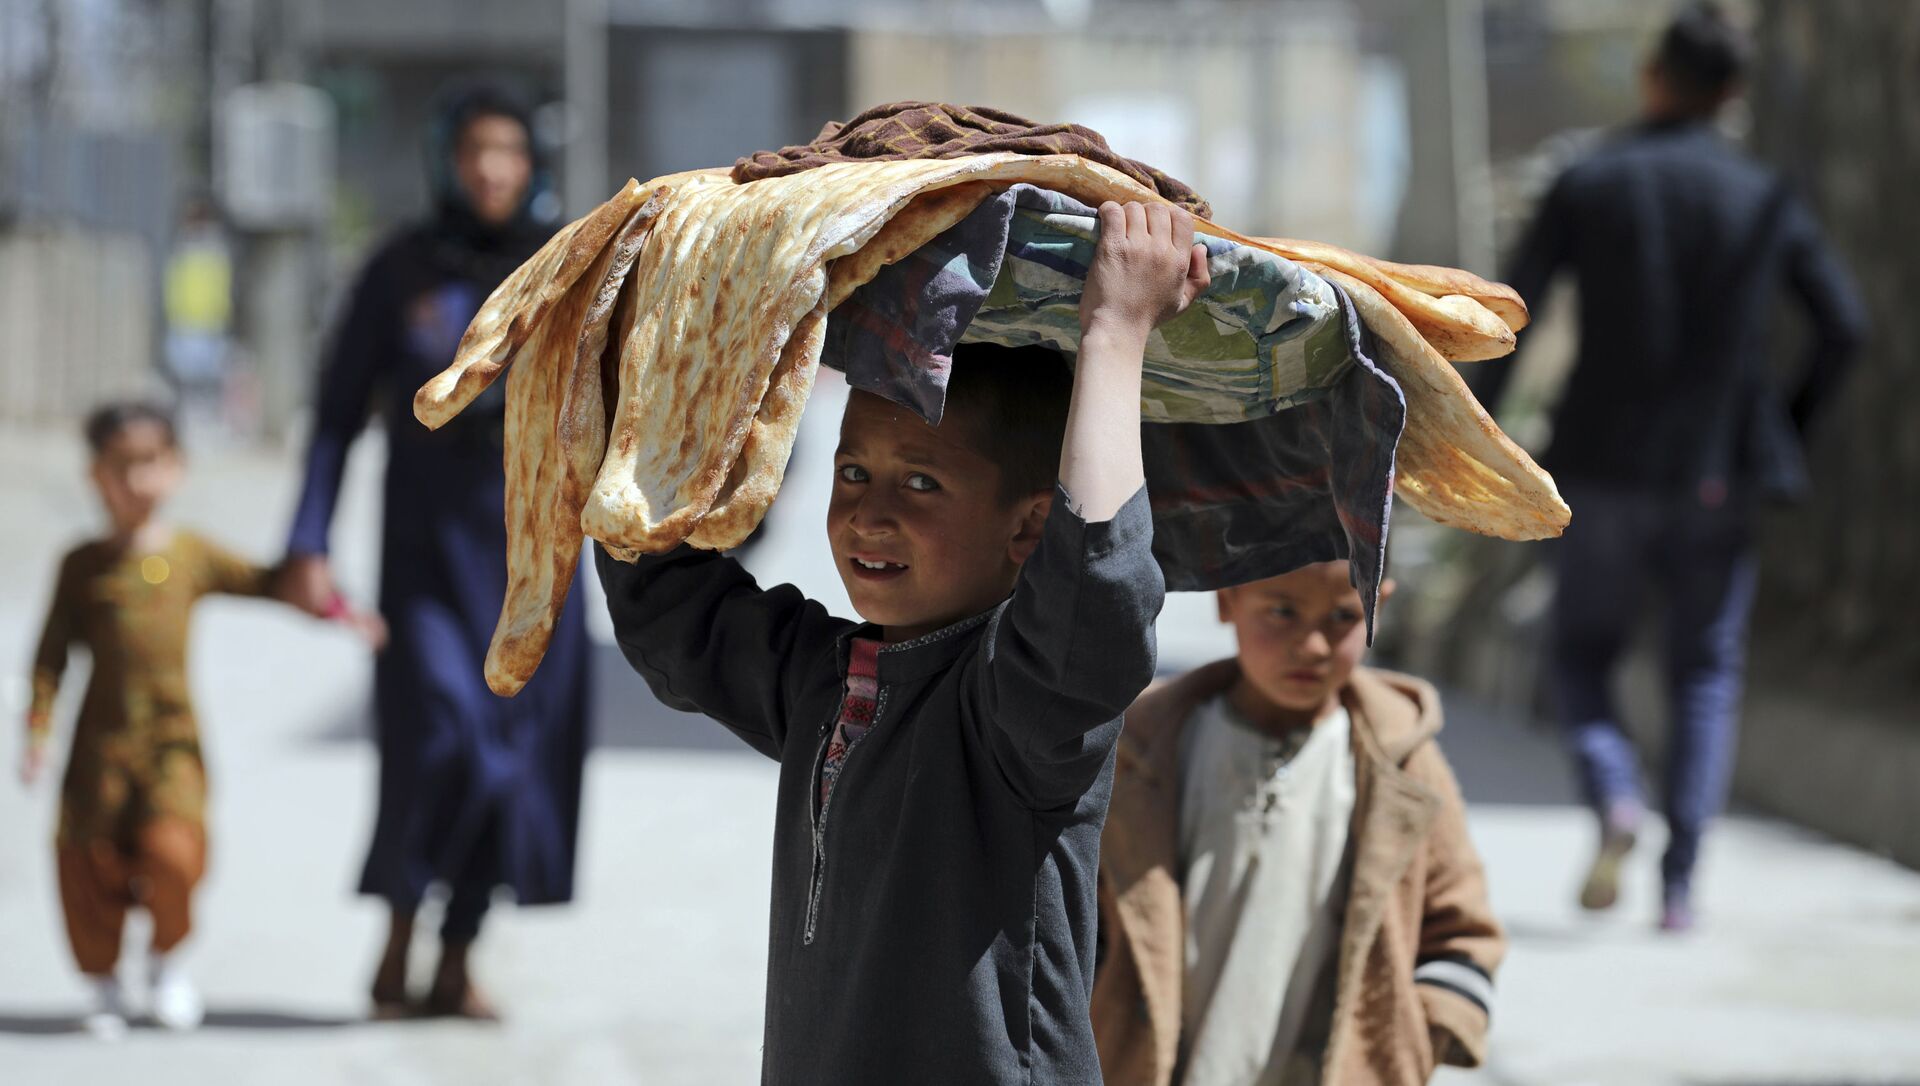 Мальчик с хлебом на голове на одной из улиц Кабула, Афганистан - Sputnik Абхазия, 1920, 08.07.2021